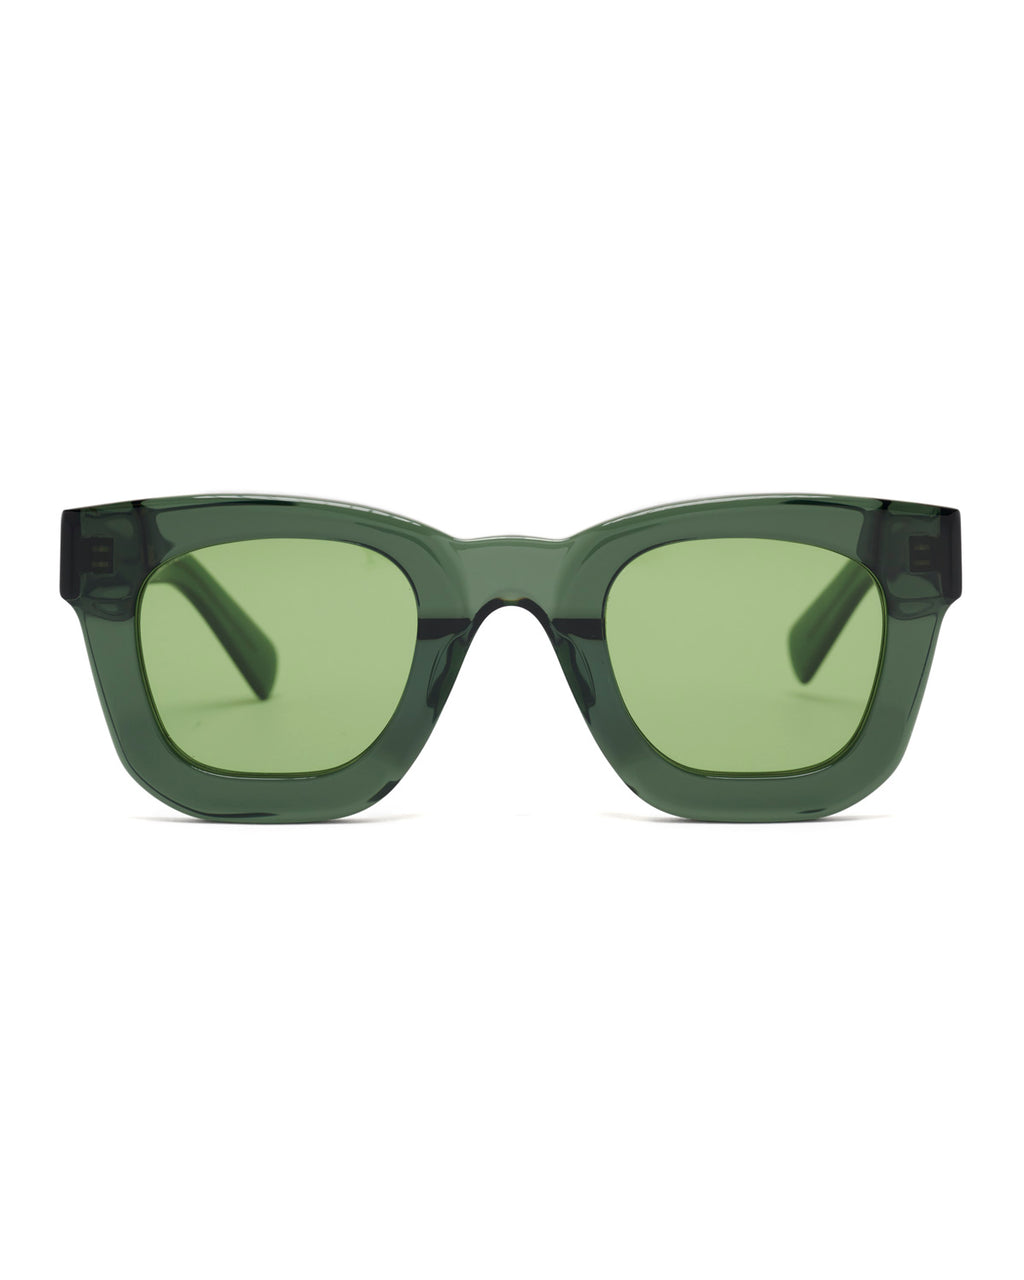 Elia Post Modern Primitive Eye Protection - Green Smoke